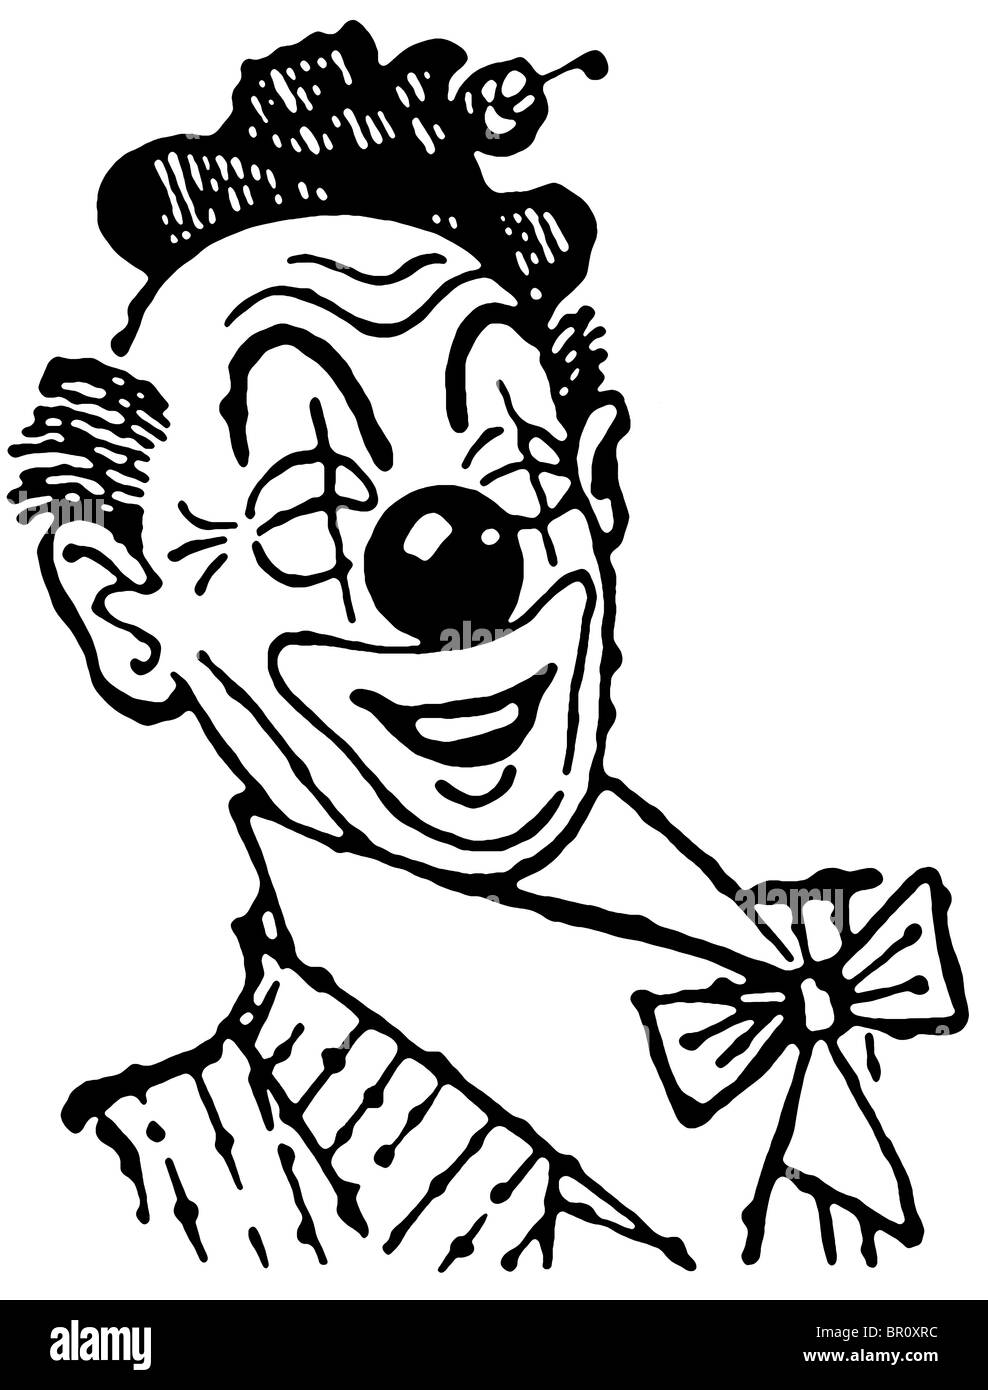 Une version noir et blanc d'une illustration d'un clown Banque D'Images